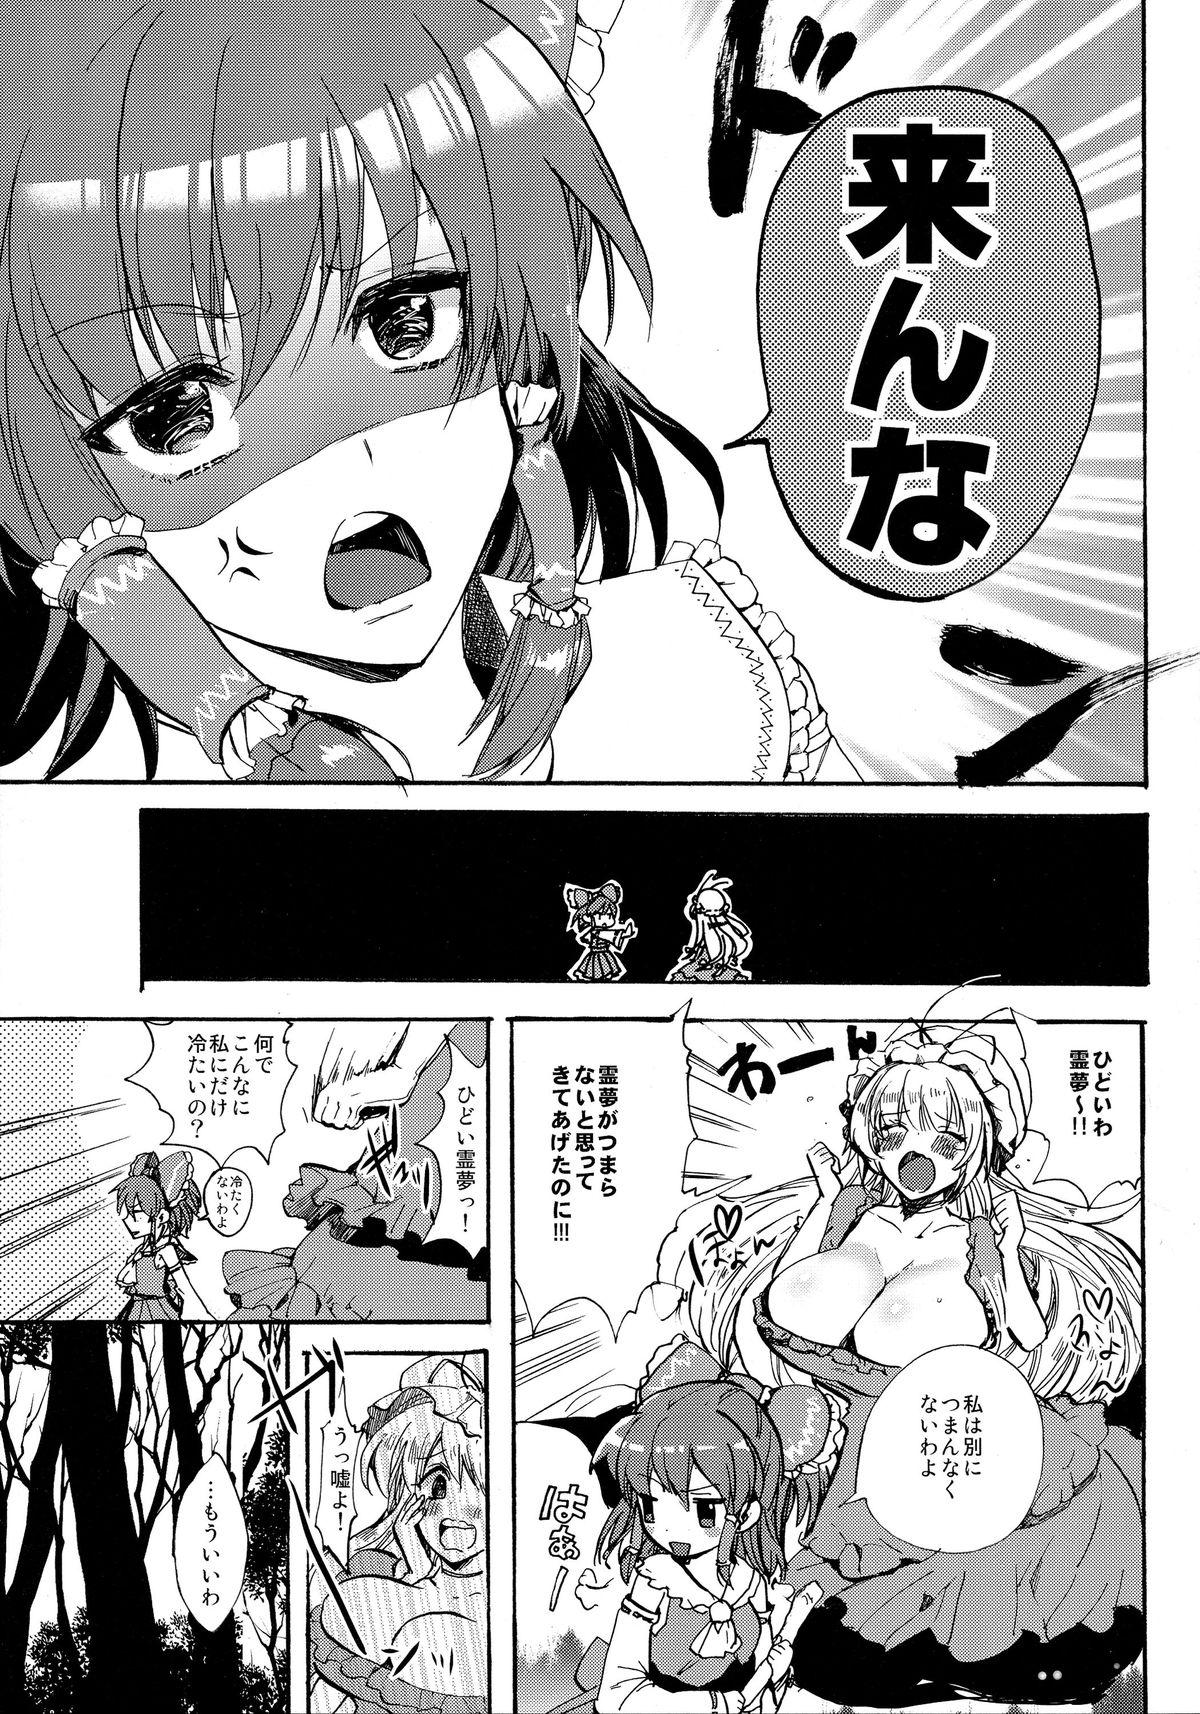 Fuck Hard Watashi no Reimu ga Konnani Tsumetai Hazu ga nai - Touhou project Stepfamily - Page 7